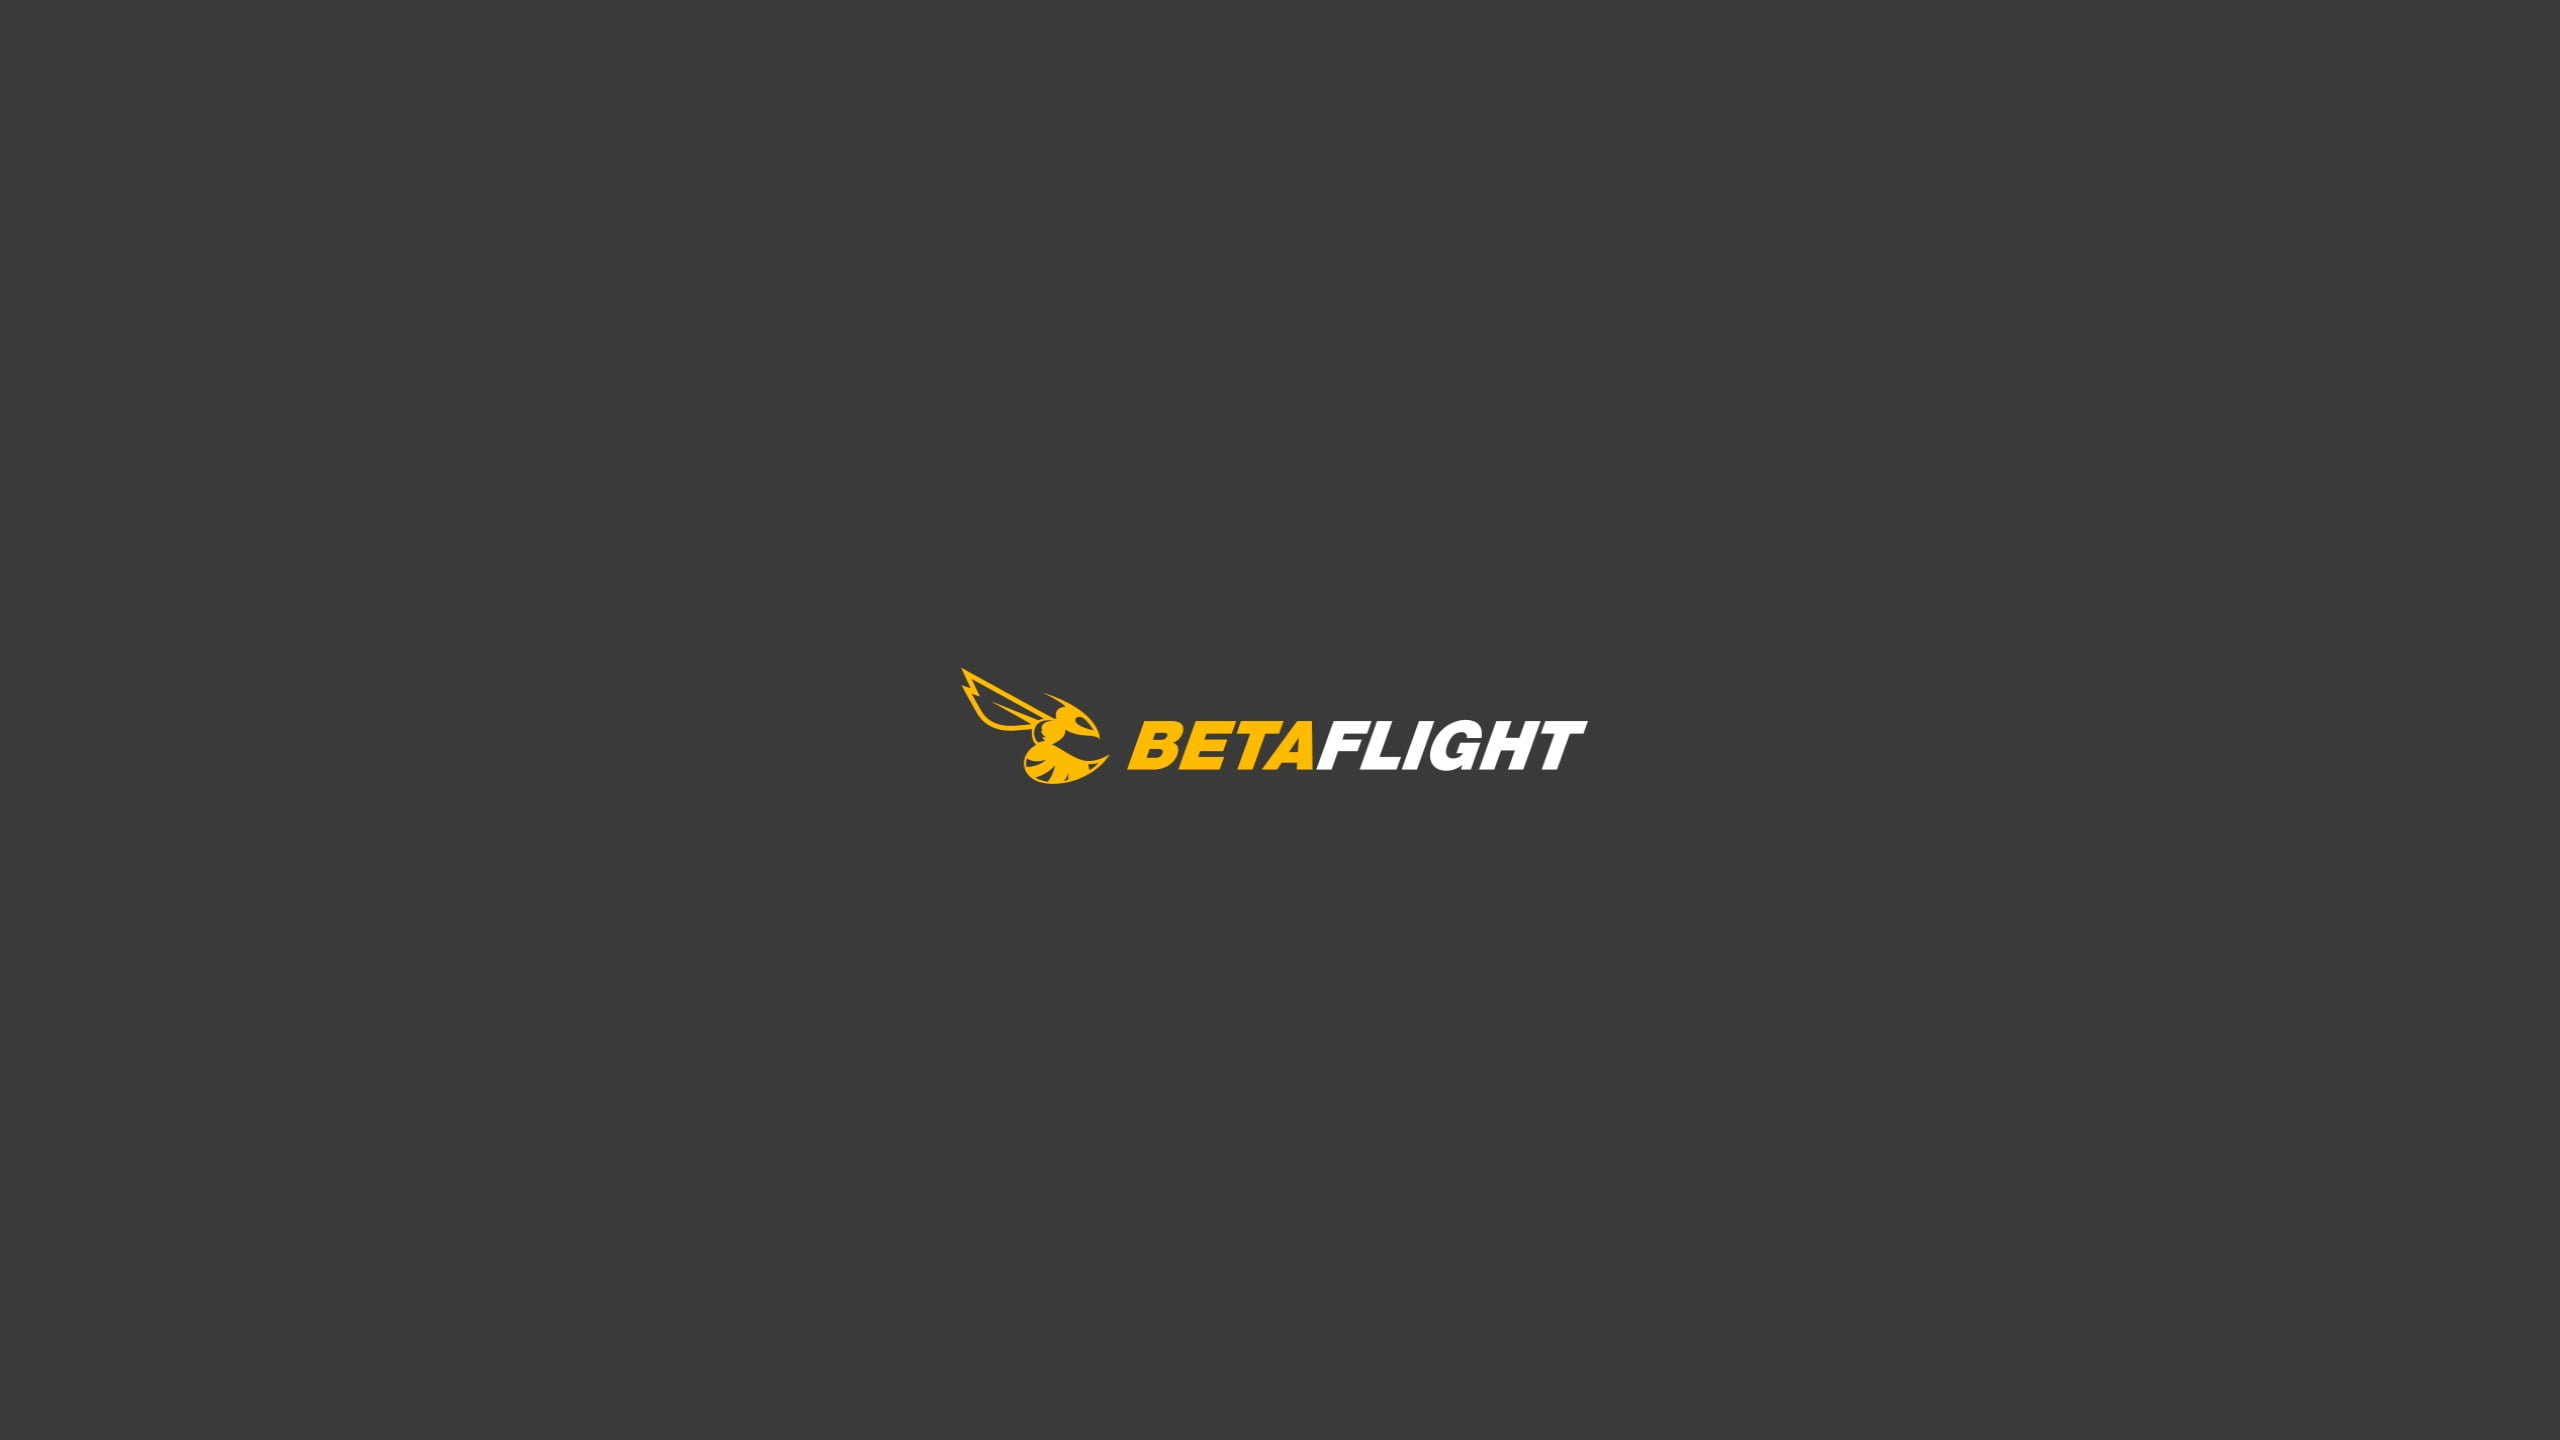 Betaflight logo